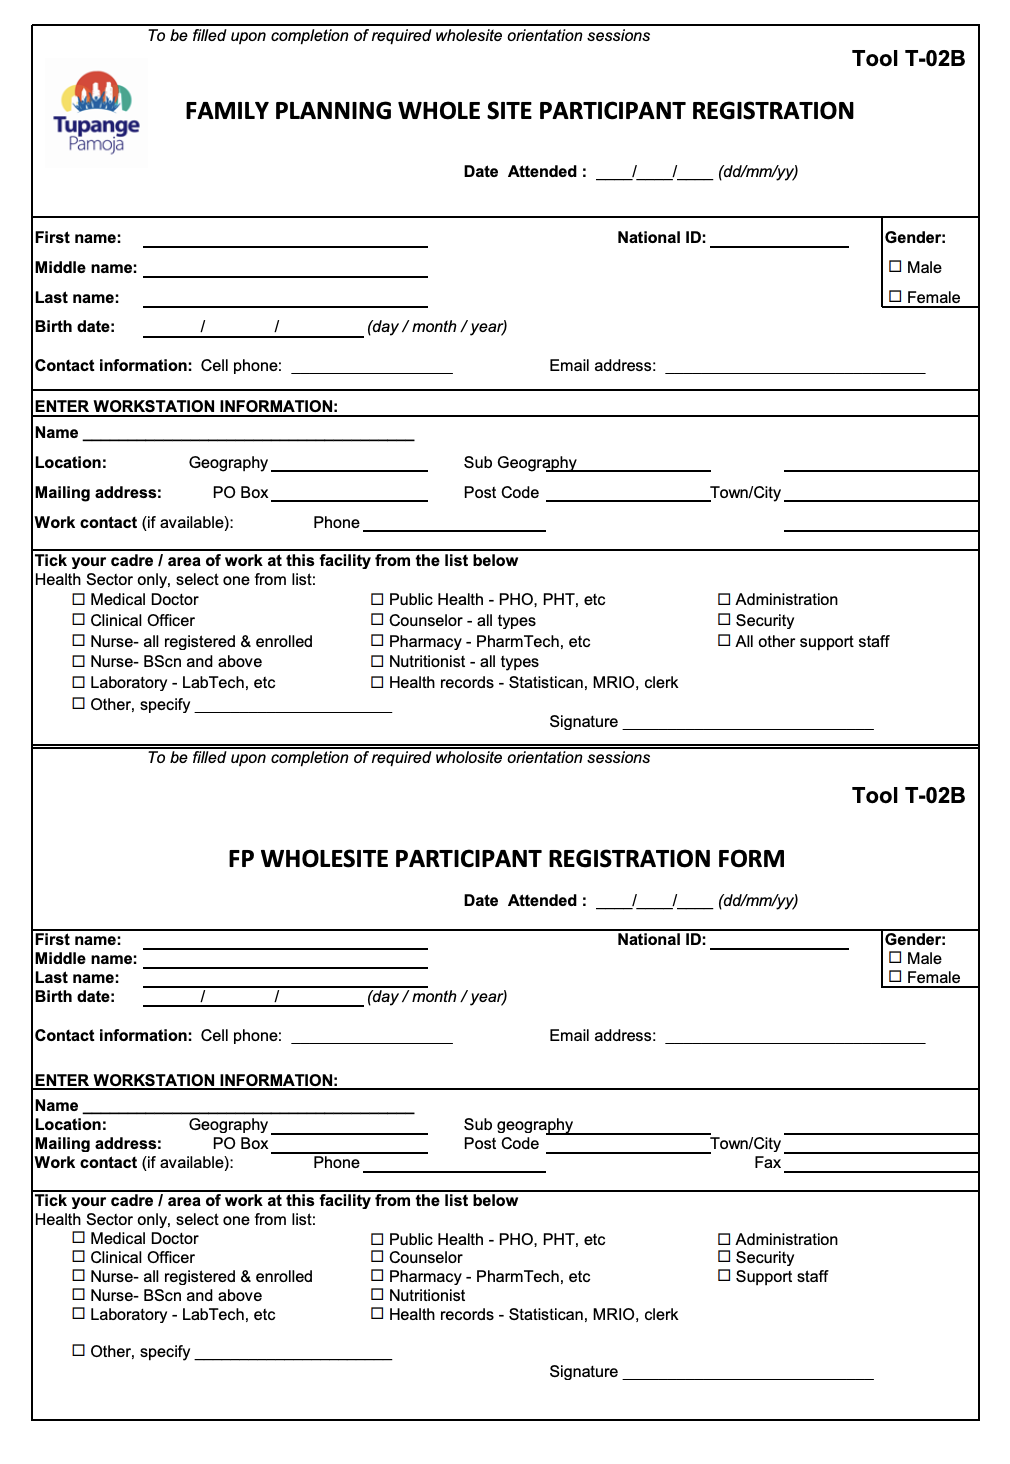 Whole Site Participant Registration Form